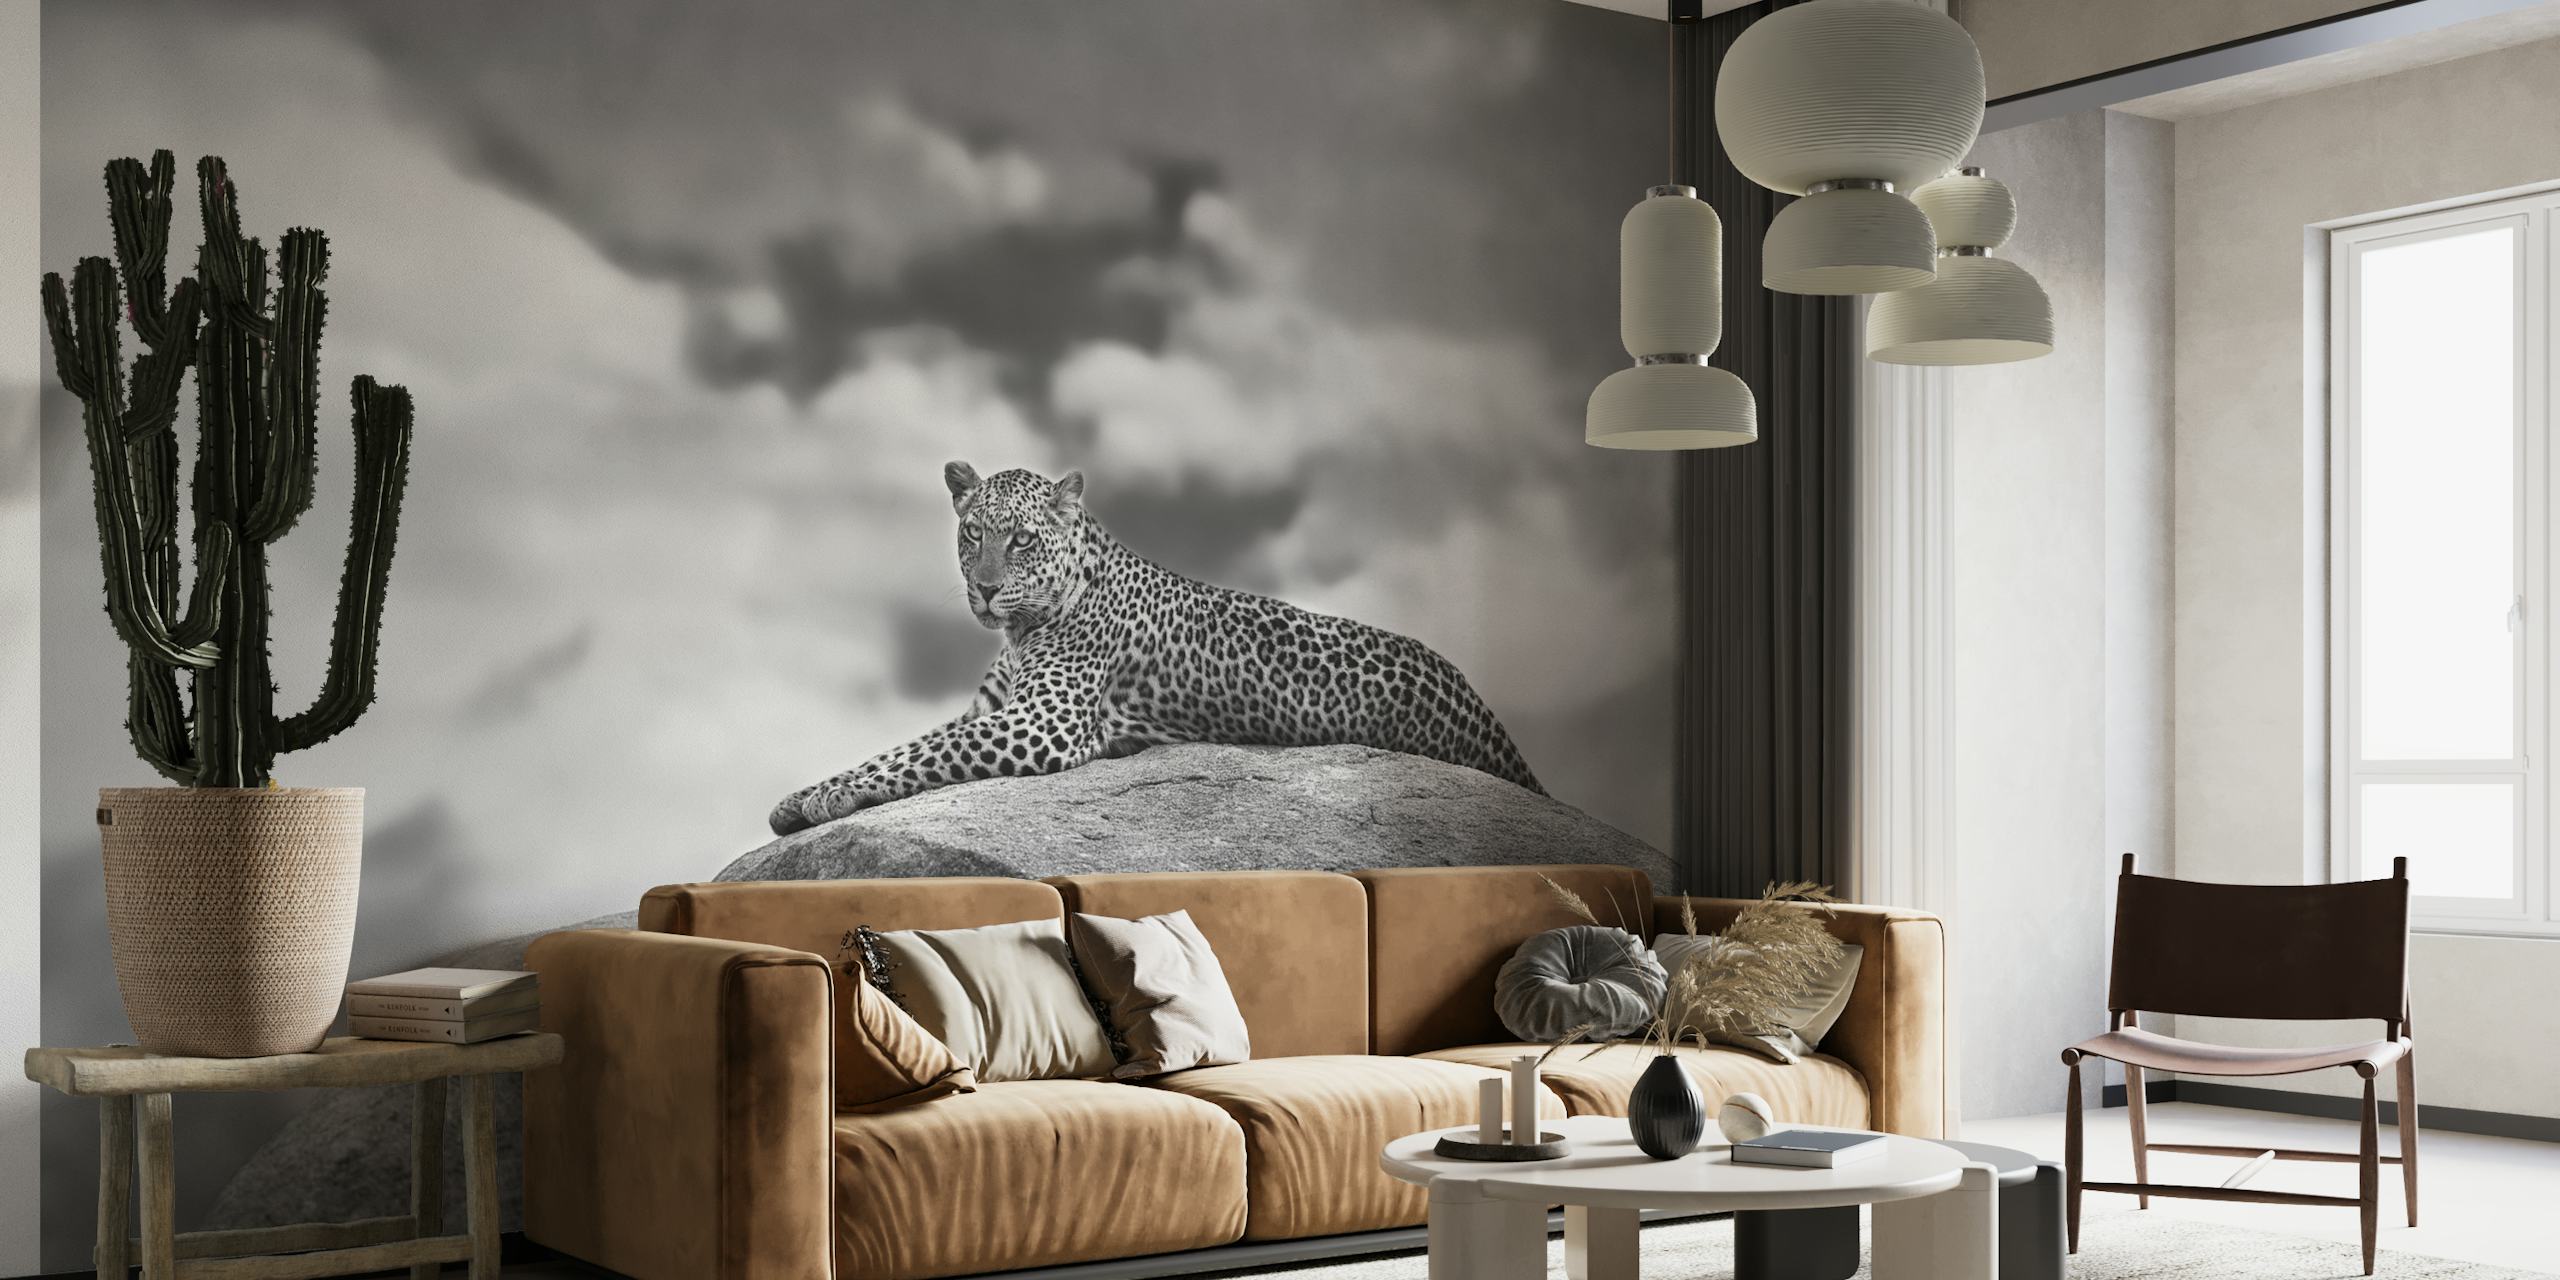 Leopard on a Kopje wallpaper